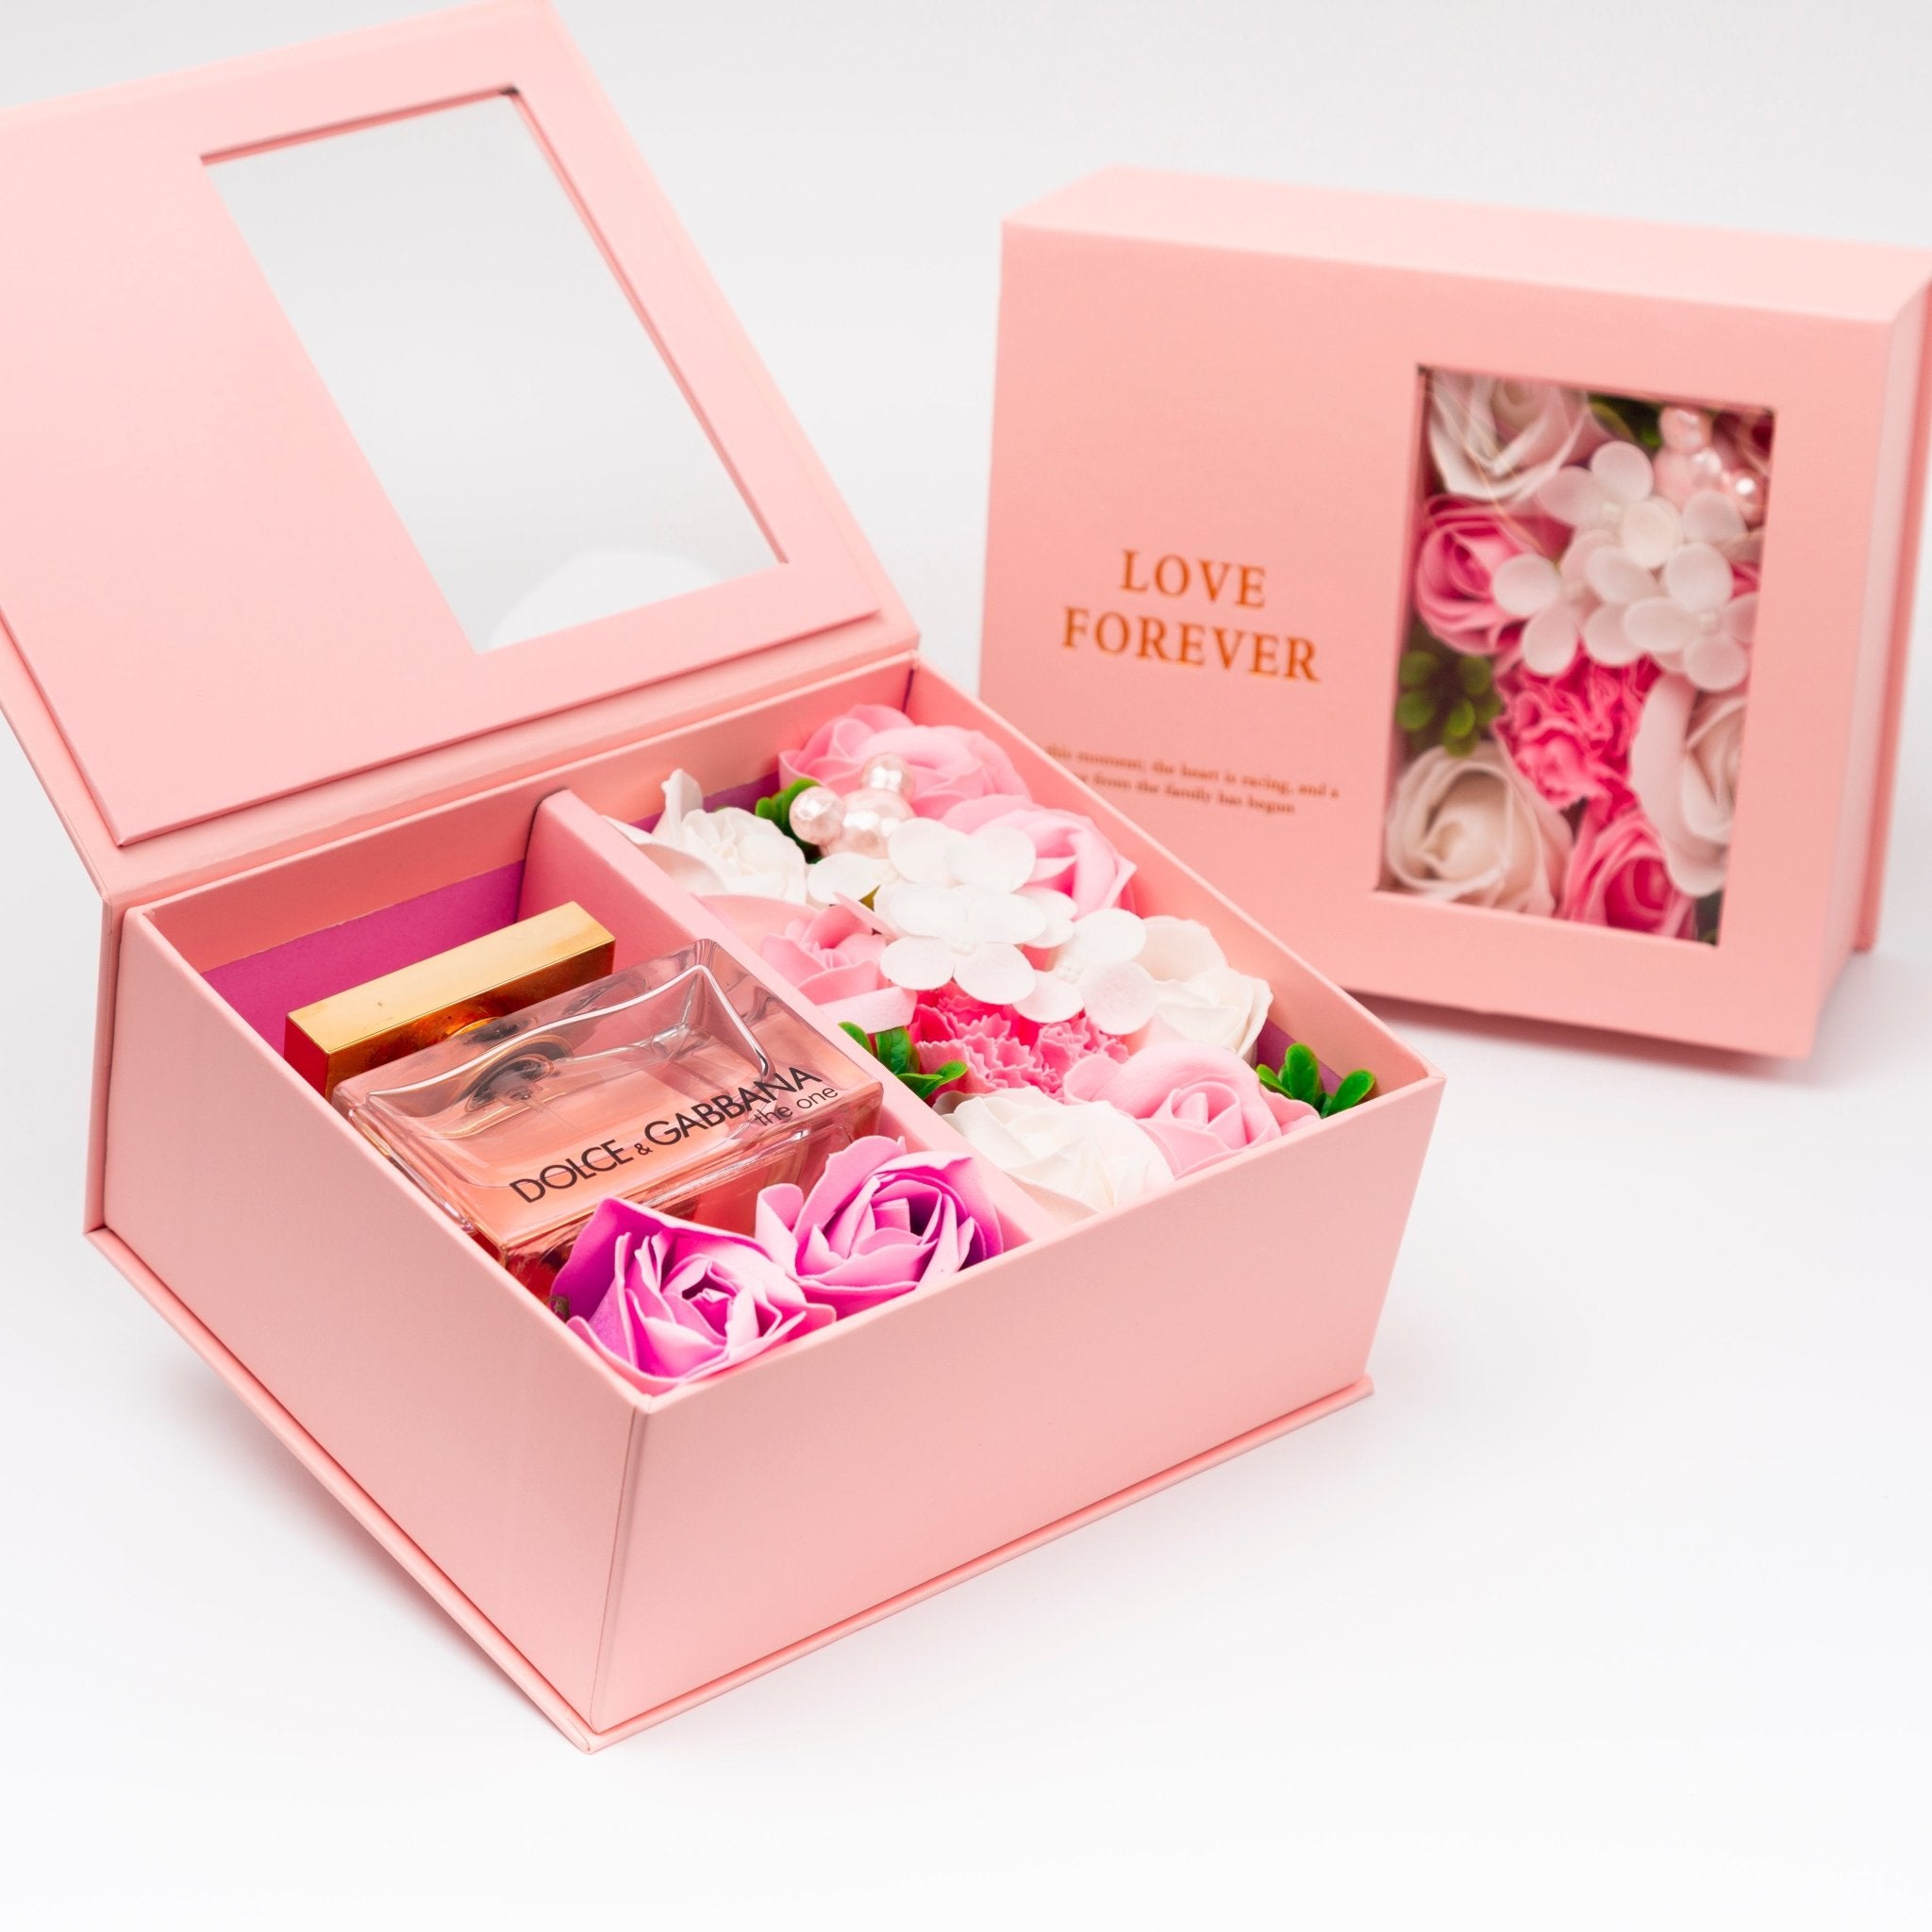 Flower Box - Perfume Gift For Women 20 - #shoFlower Box - Perfume Gift For Women 20p_name#Flower Box - Perfume Gift For Women 20Gift Boxes & TinsTakreemTakreem.joWomenPerfumeFlower Box - Perfume Gift For Women 20 - Takreem.jo